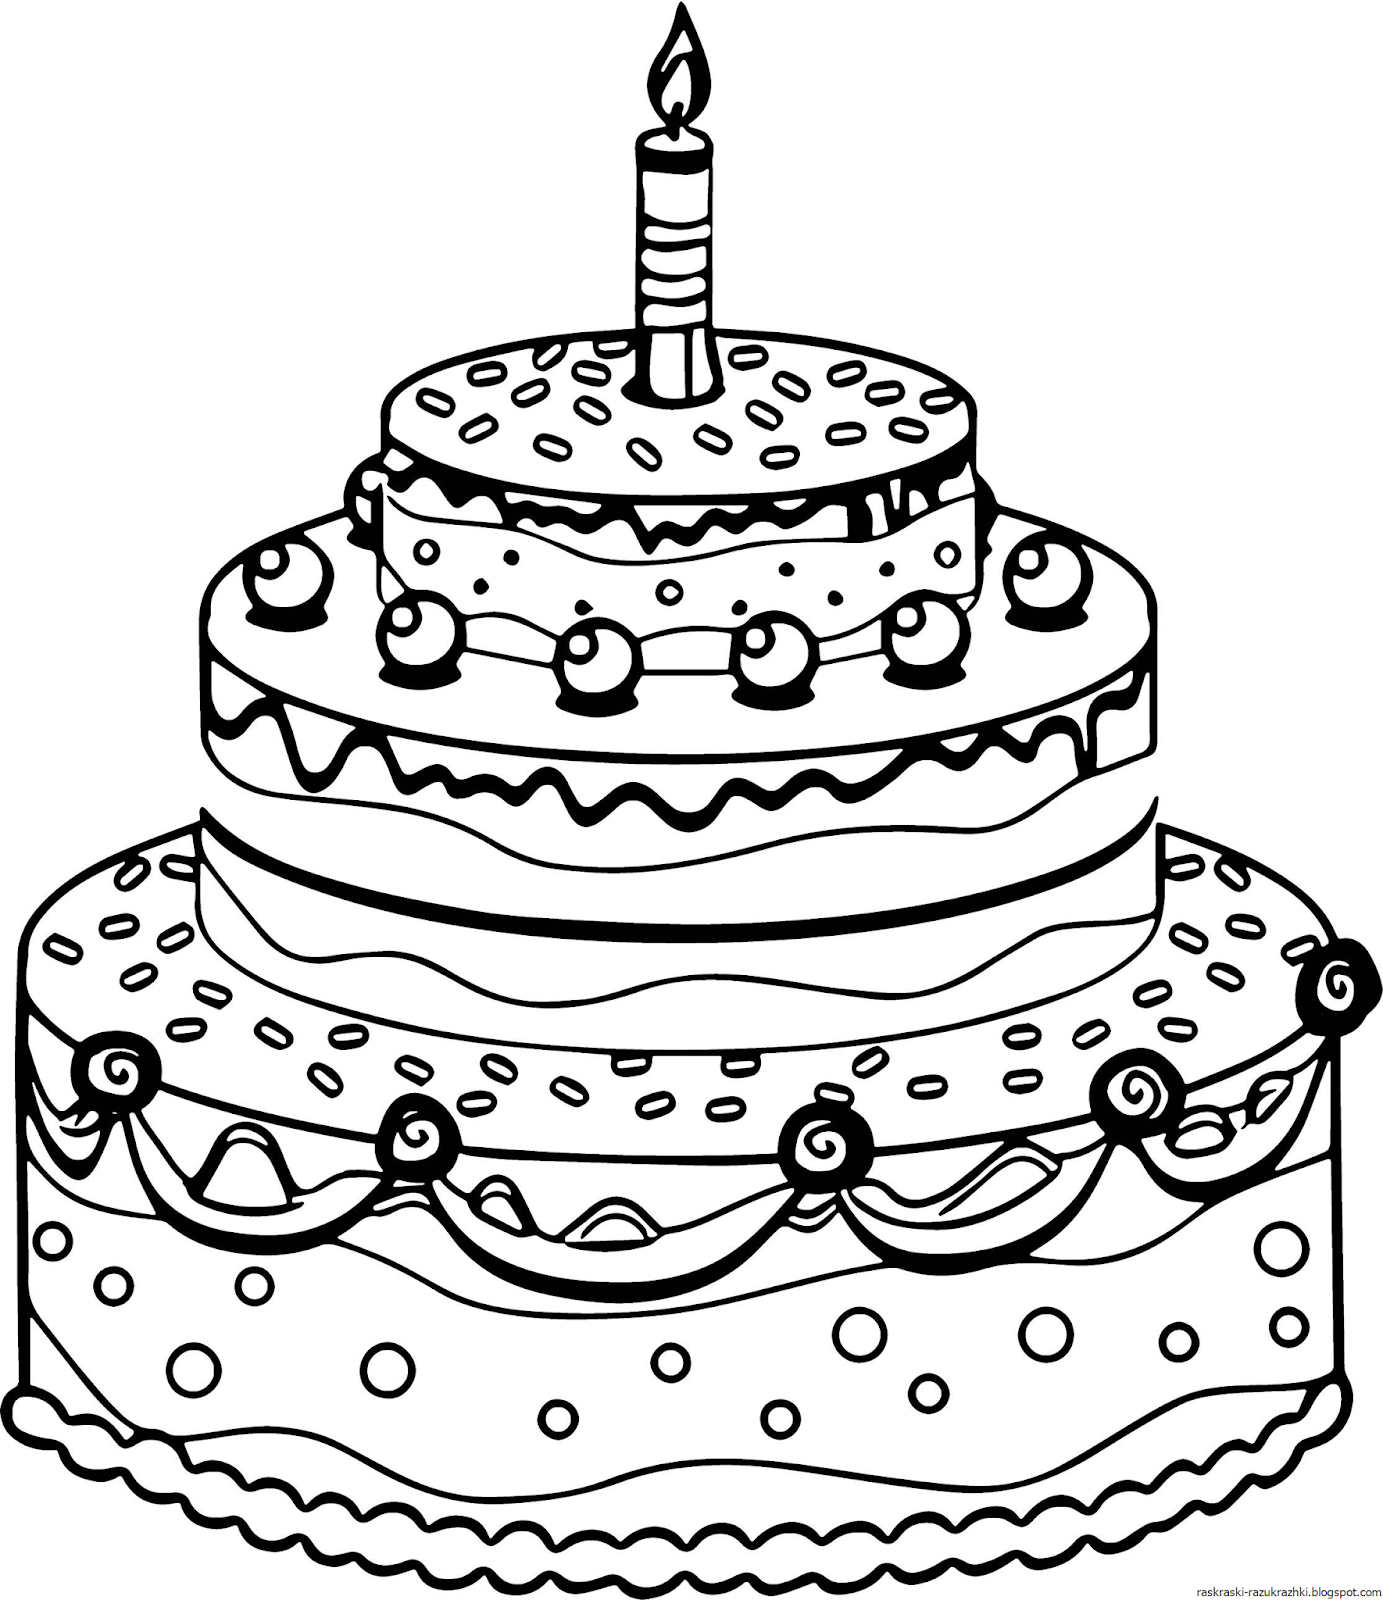 Цветная страница раскраски торта ко дню рождения